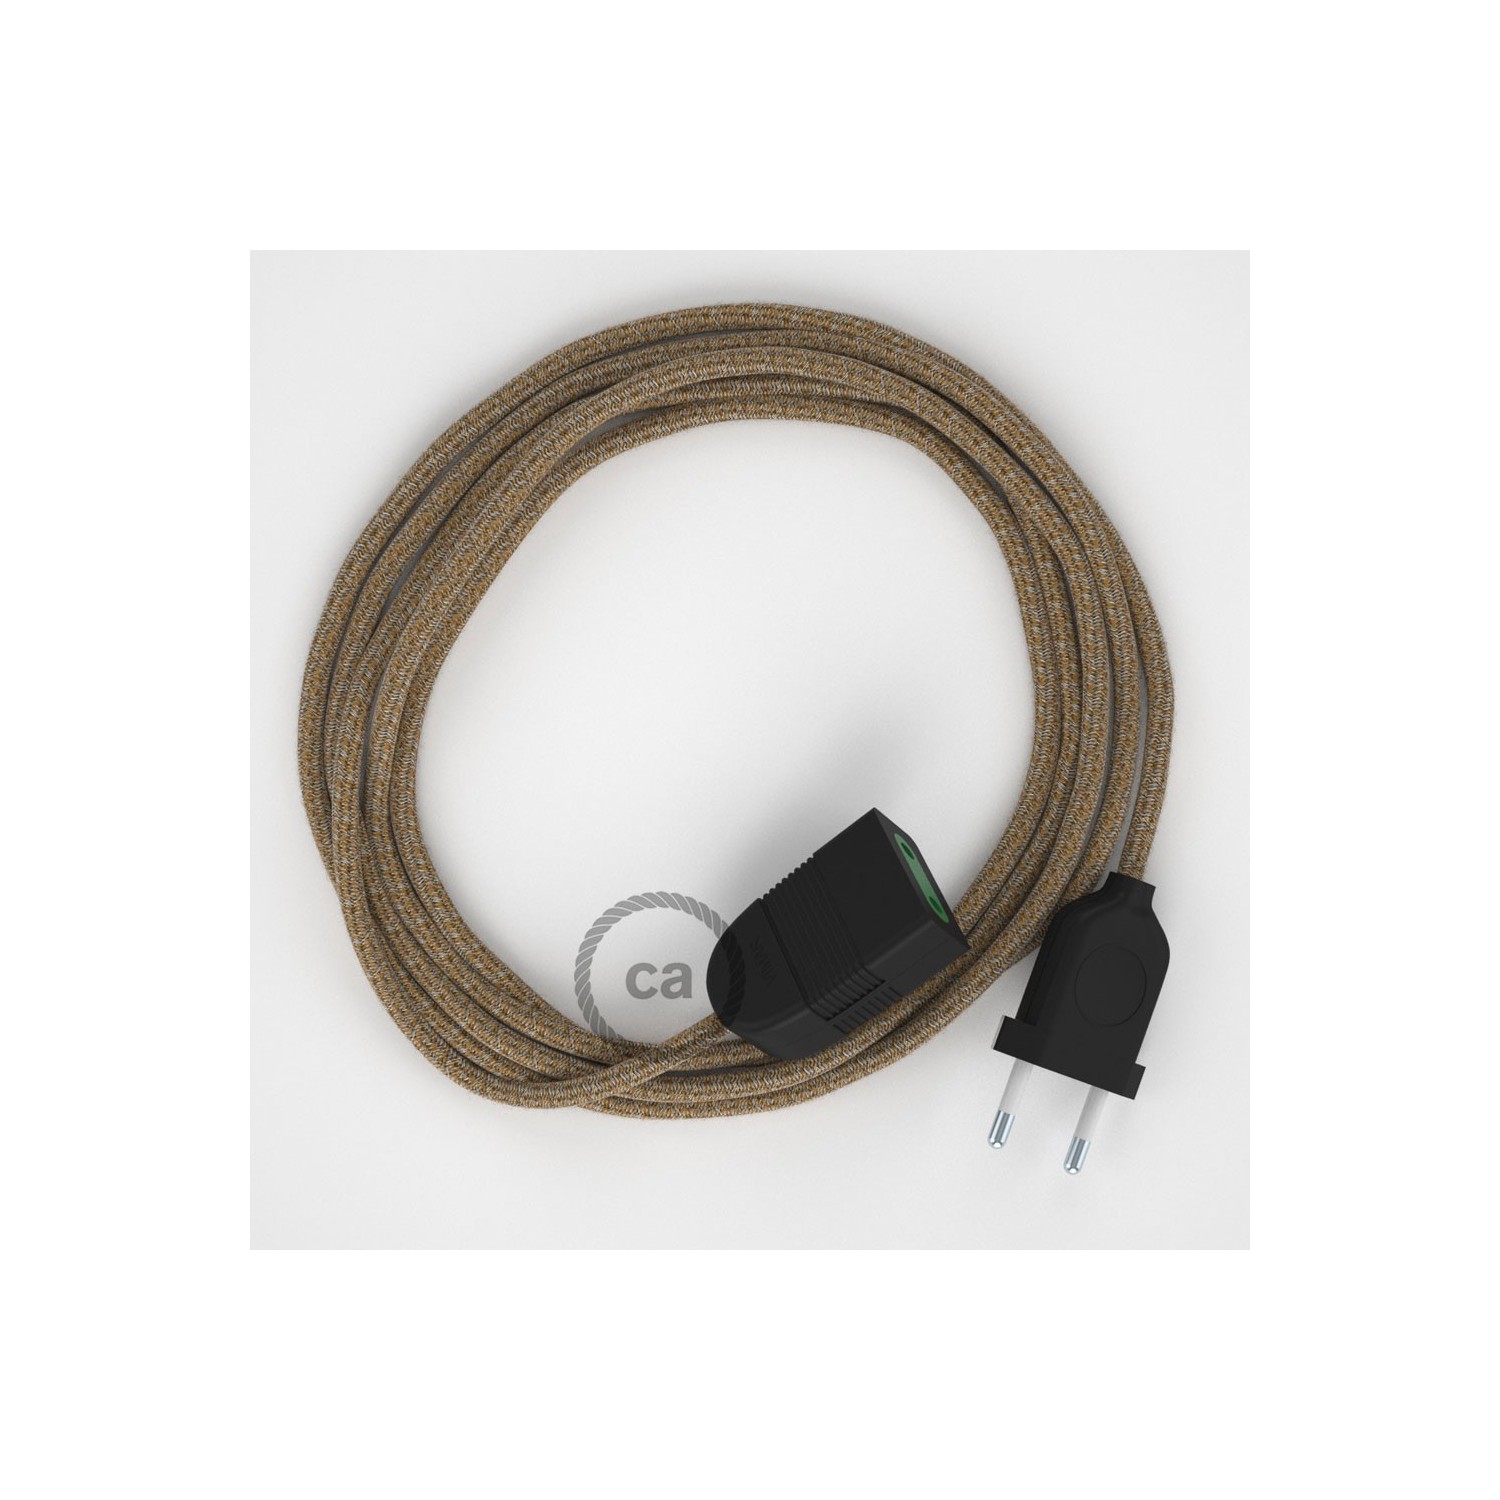 Rallonge électrique avec câble textile RS82 Coton et Lin Naturel Marron 2P 10A Made in Italy.